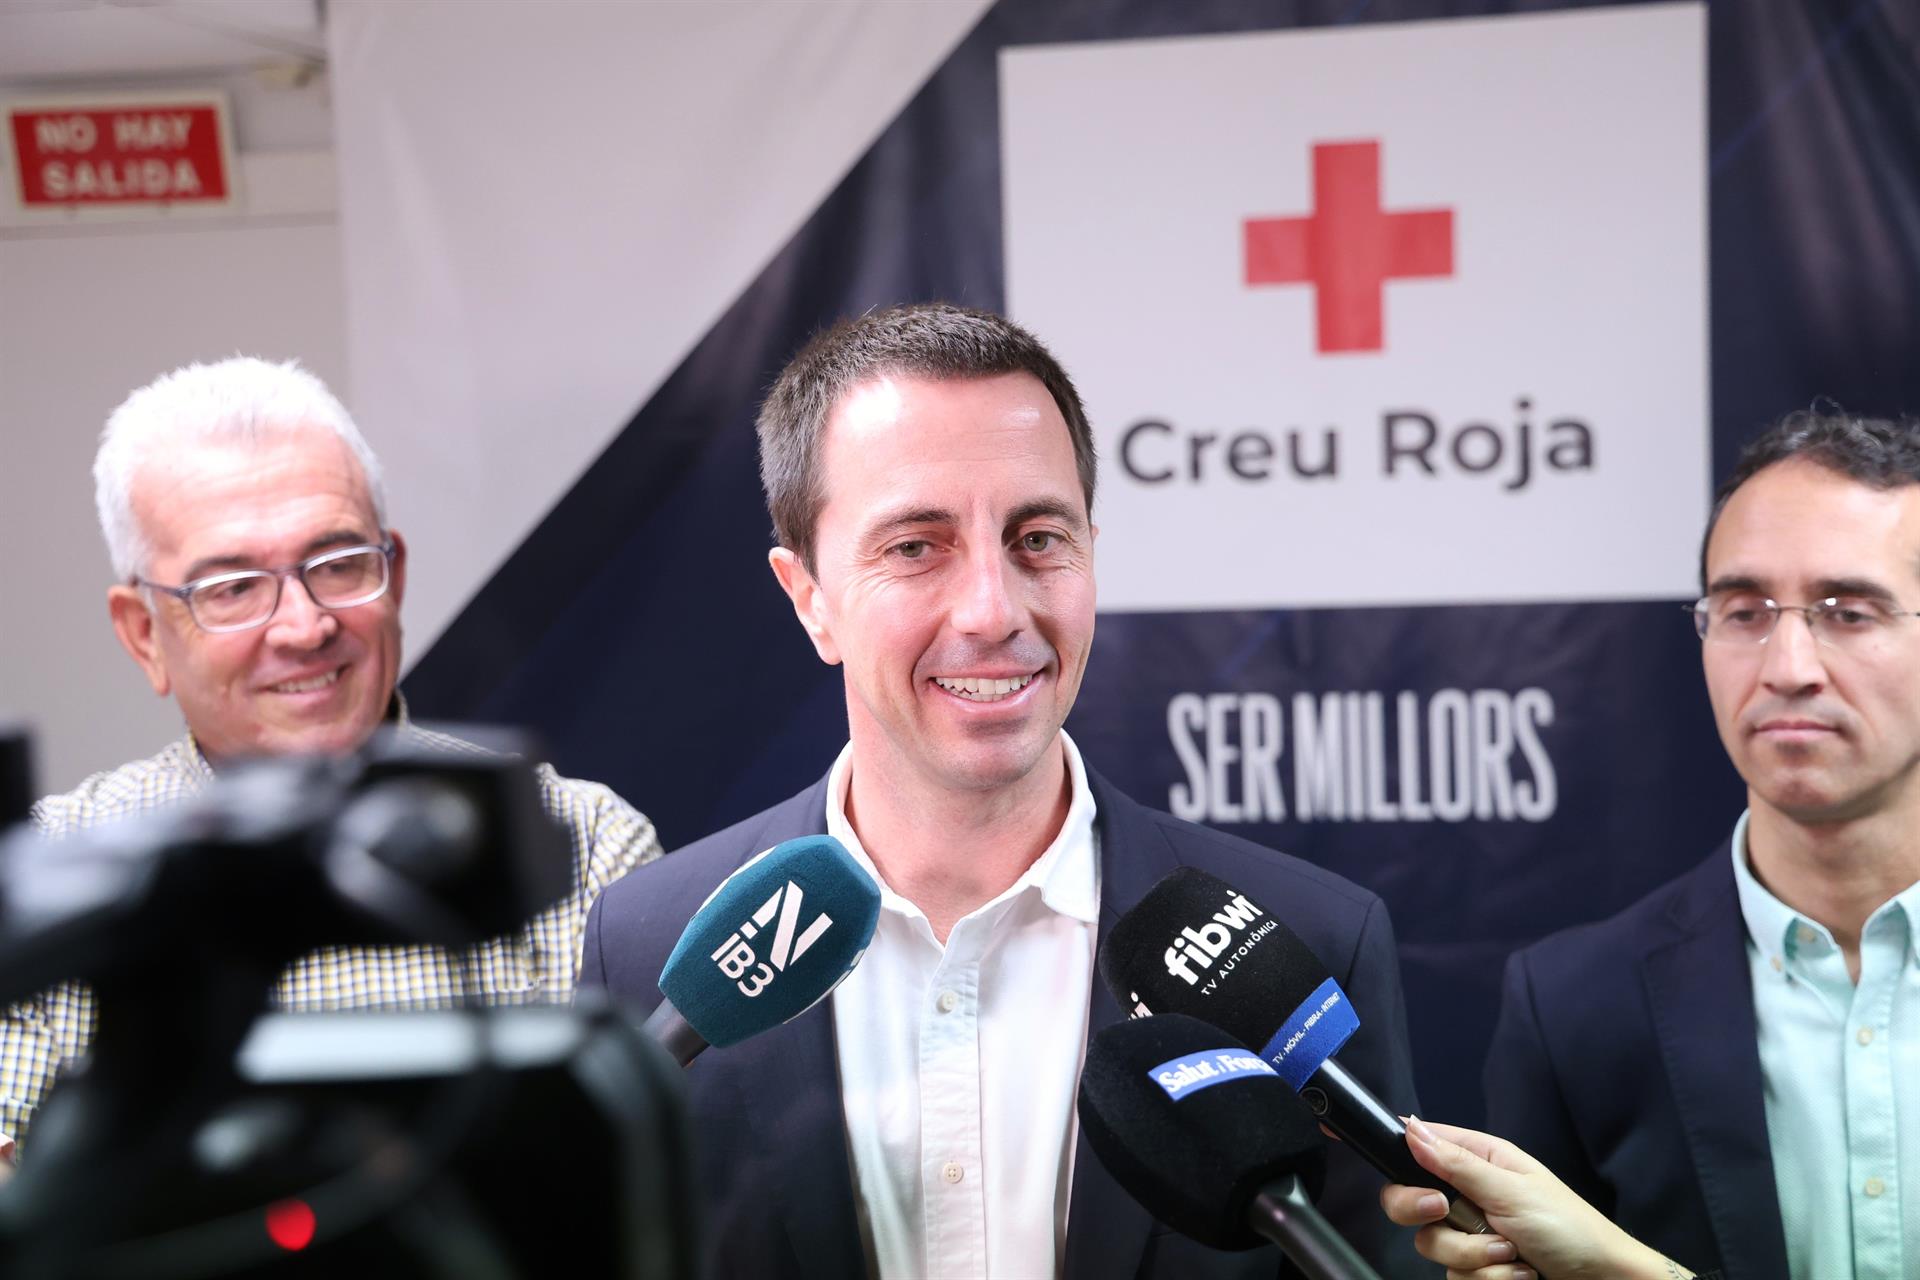 El presidente del Consell de Mallorca, Llorenç Galmés, en declaraciones a los medios en su visita a Cruz Roja Baleares. - CONSELL DE MALLORCA